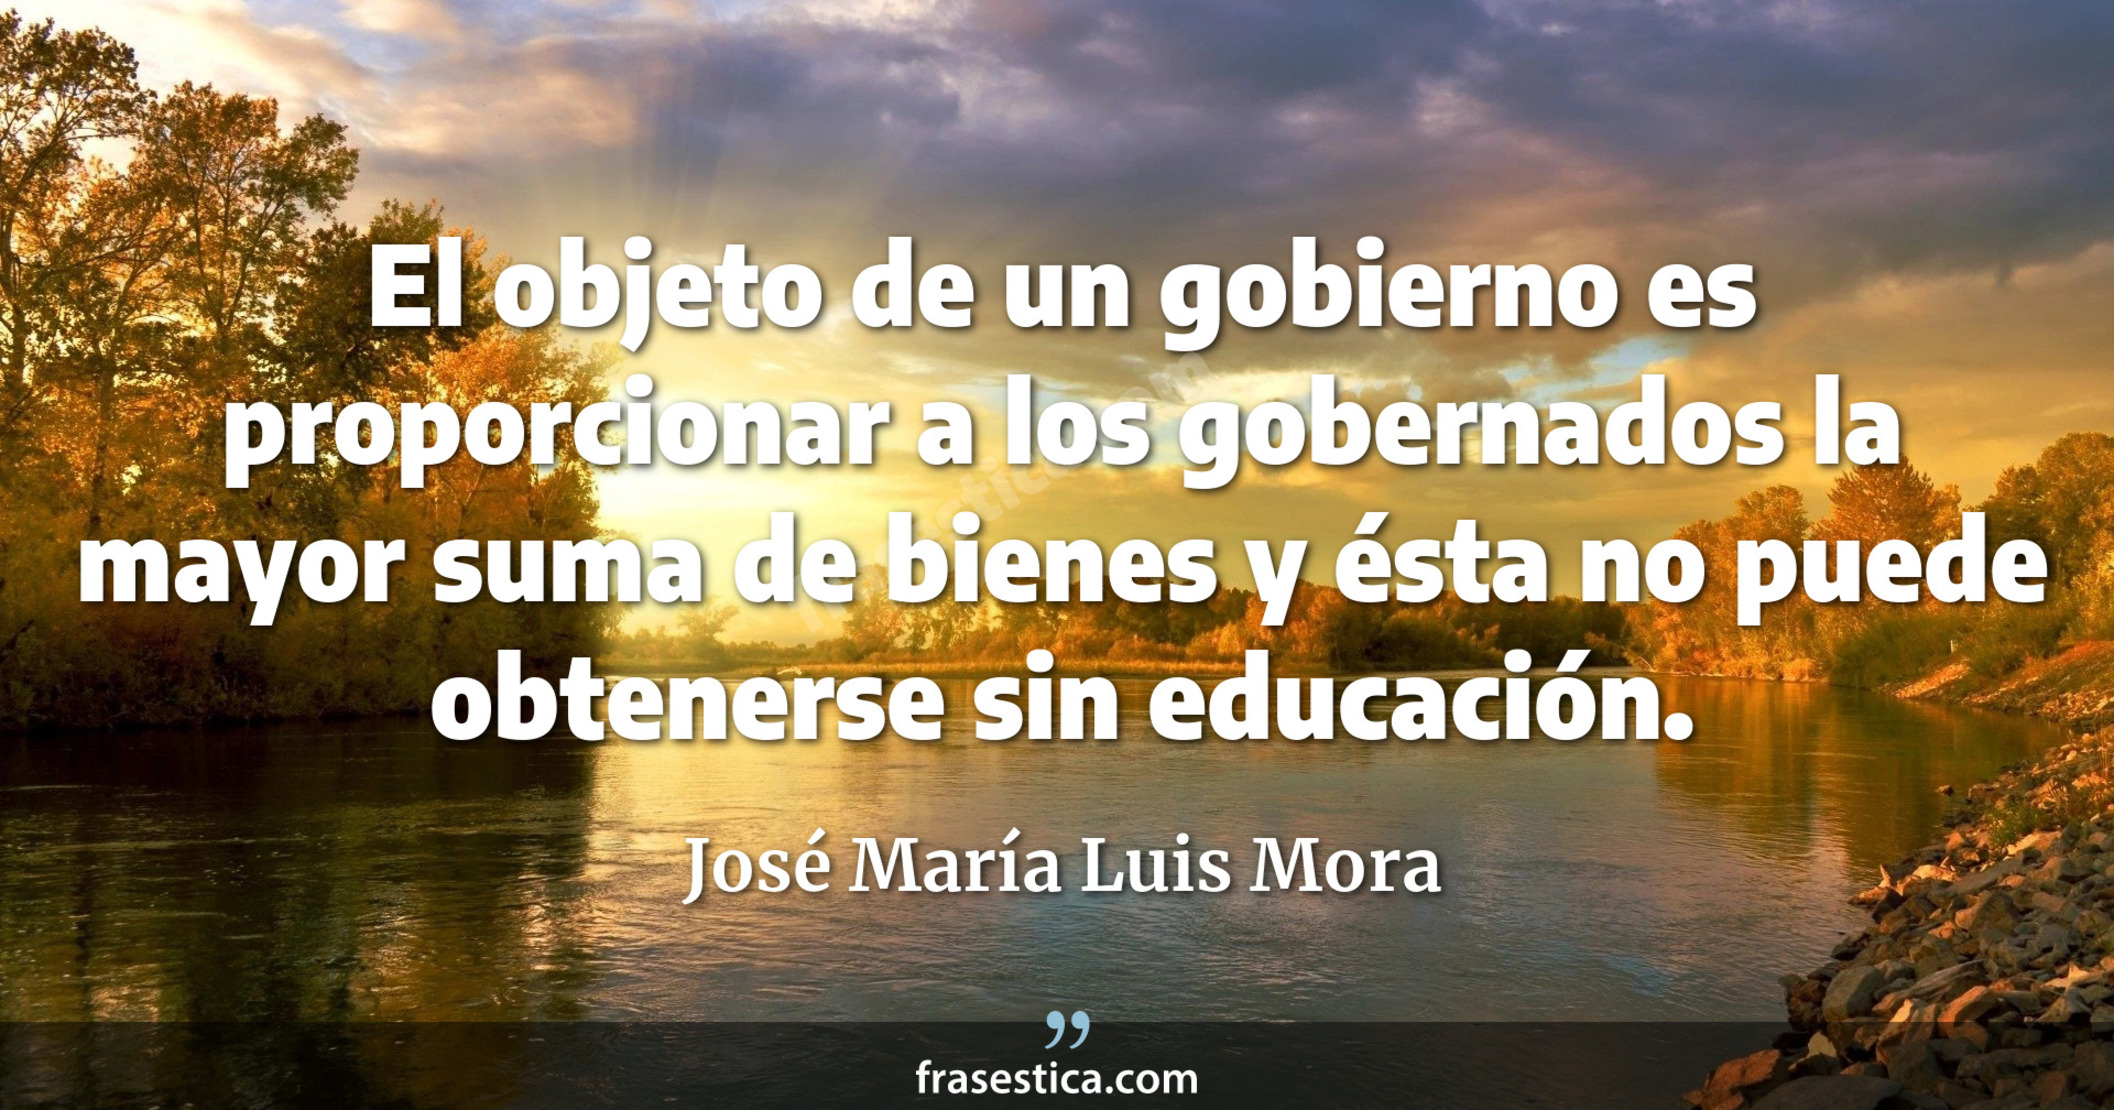 El objeto de un gobierno es proporcionar a los gobernados la mayor suma de bienes y ésta no puede obtenerse sin educación. - José María Luis Mora